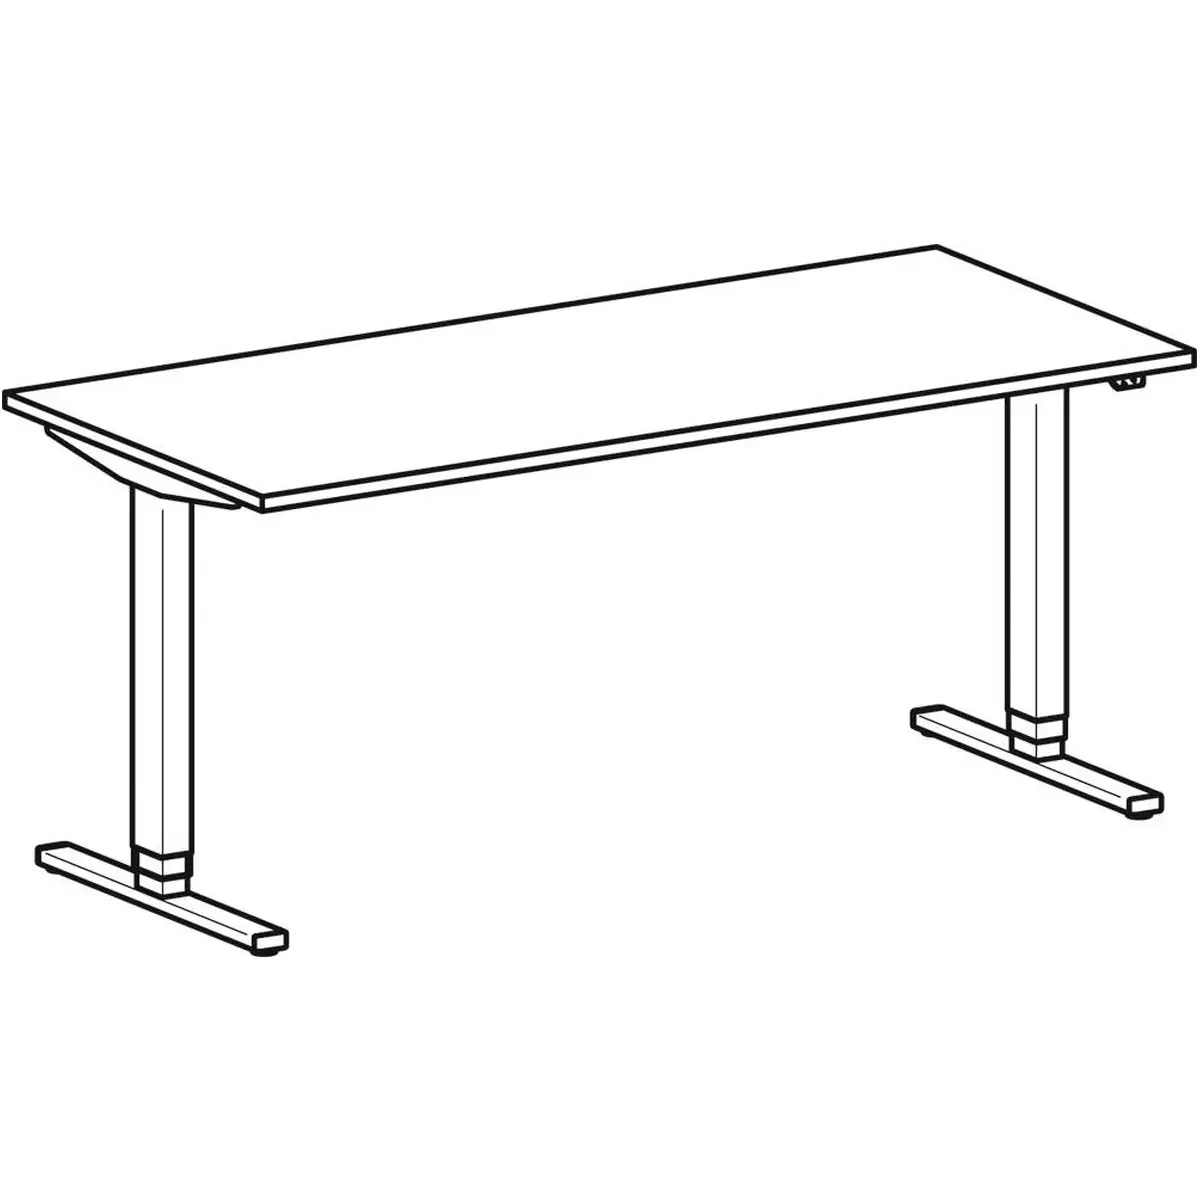 Schreibtisch, elektr. höhenverstellbar, BxTxH 1800x800x650-1250 mm, Melamin-Platte 25 mm, lichtgrau/silber